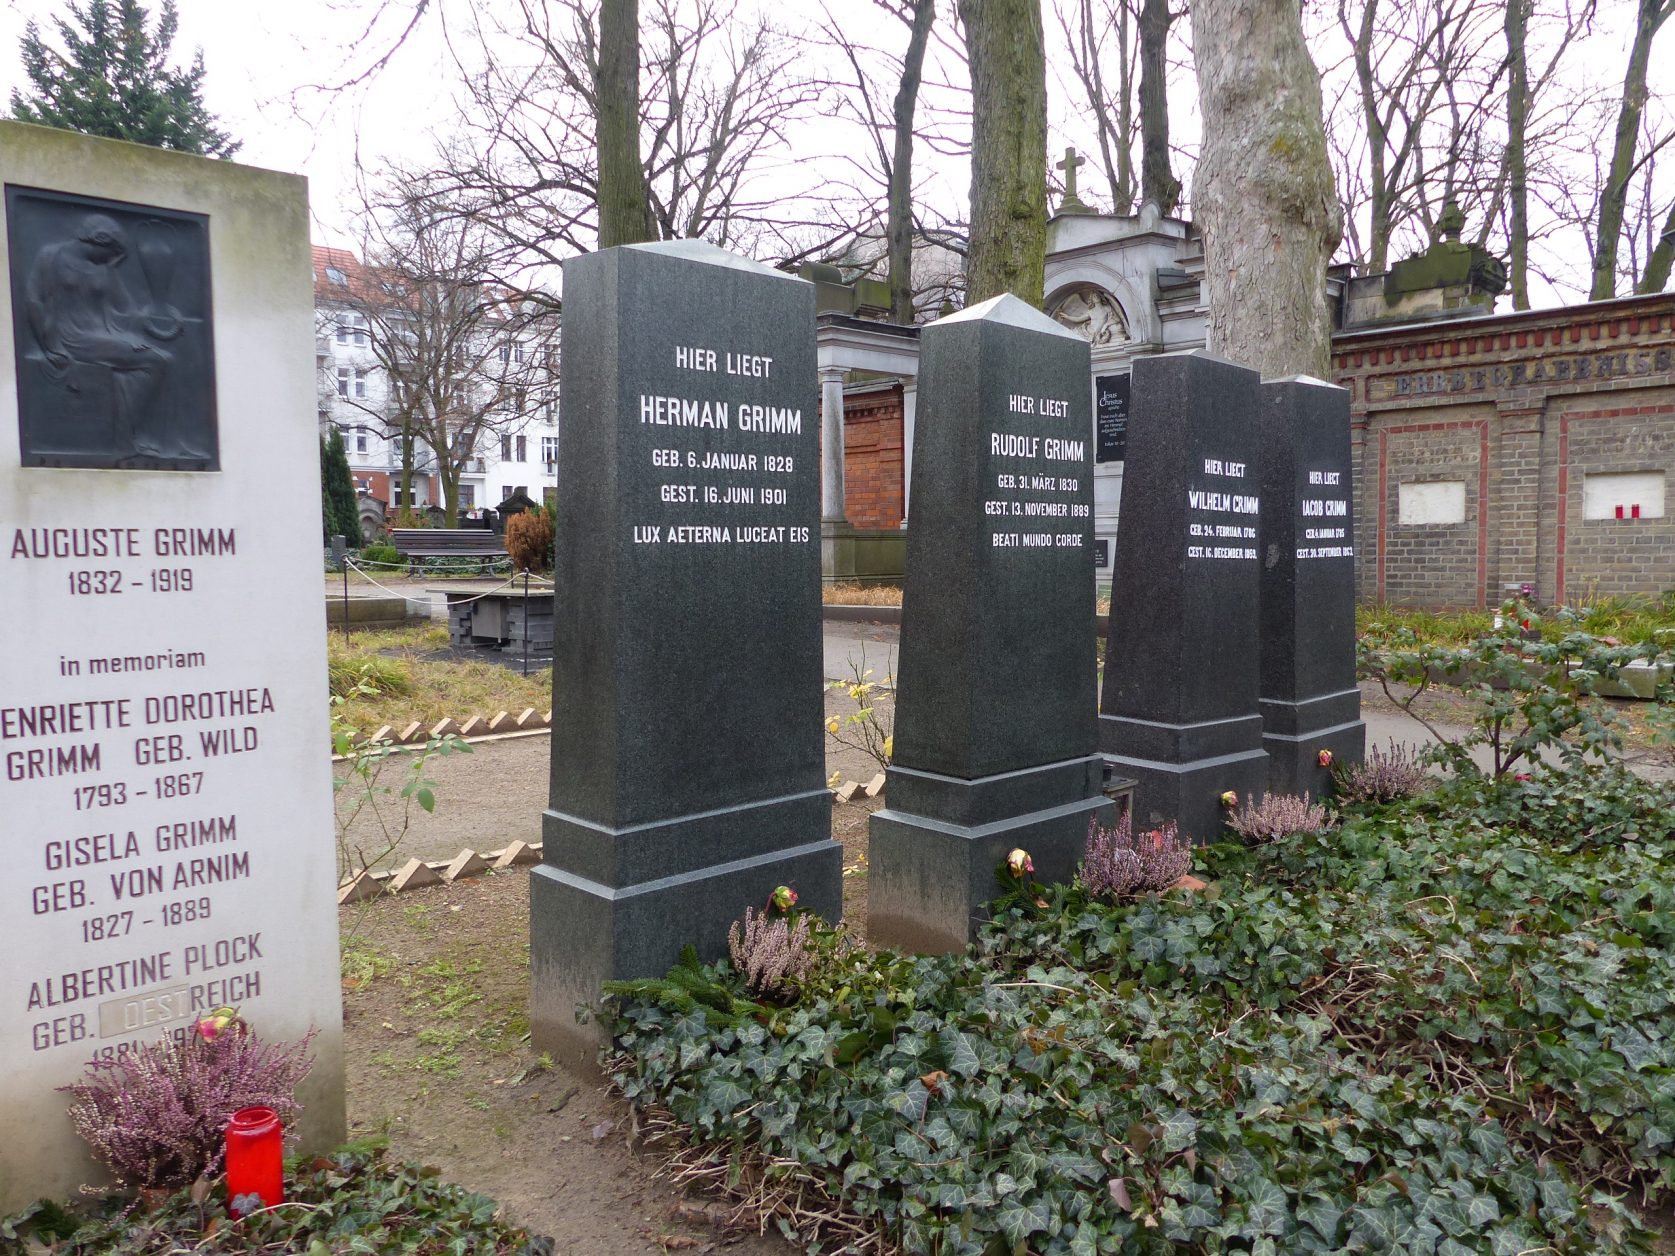 Gräber für Auguste Grimm, Jacob und Wilhelm Grimm sowie deren Söhne